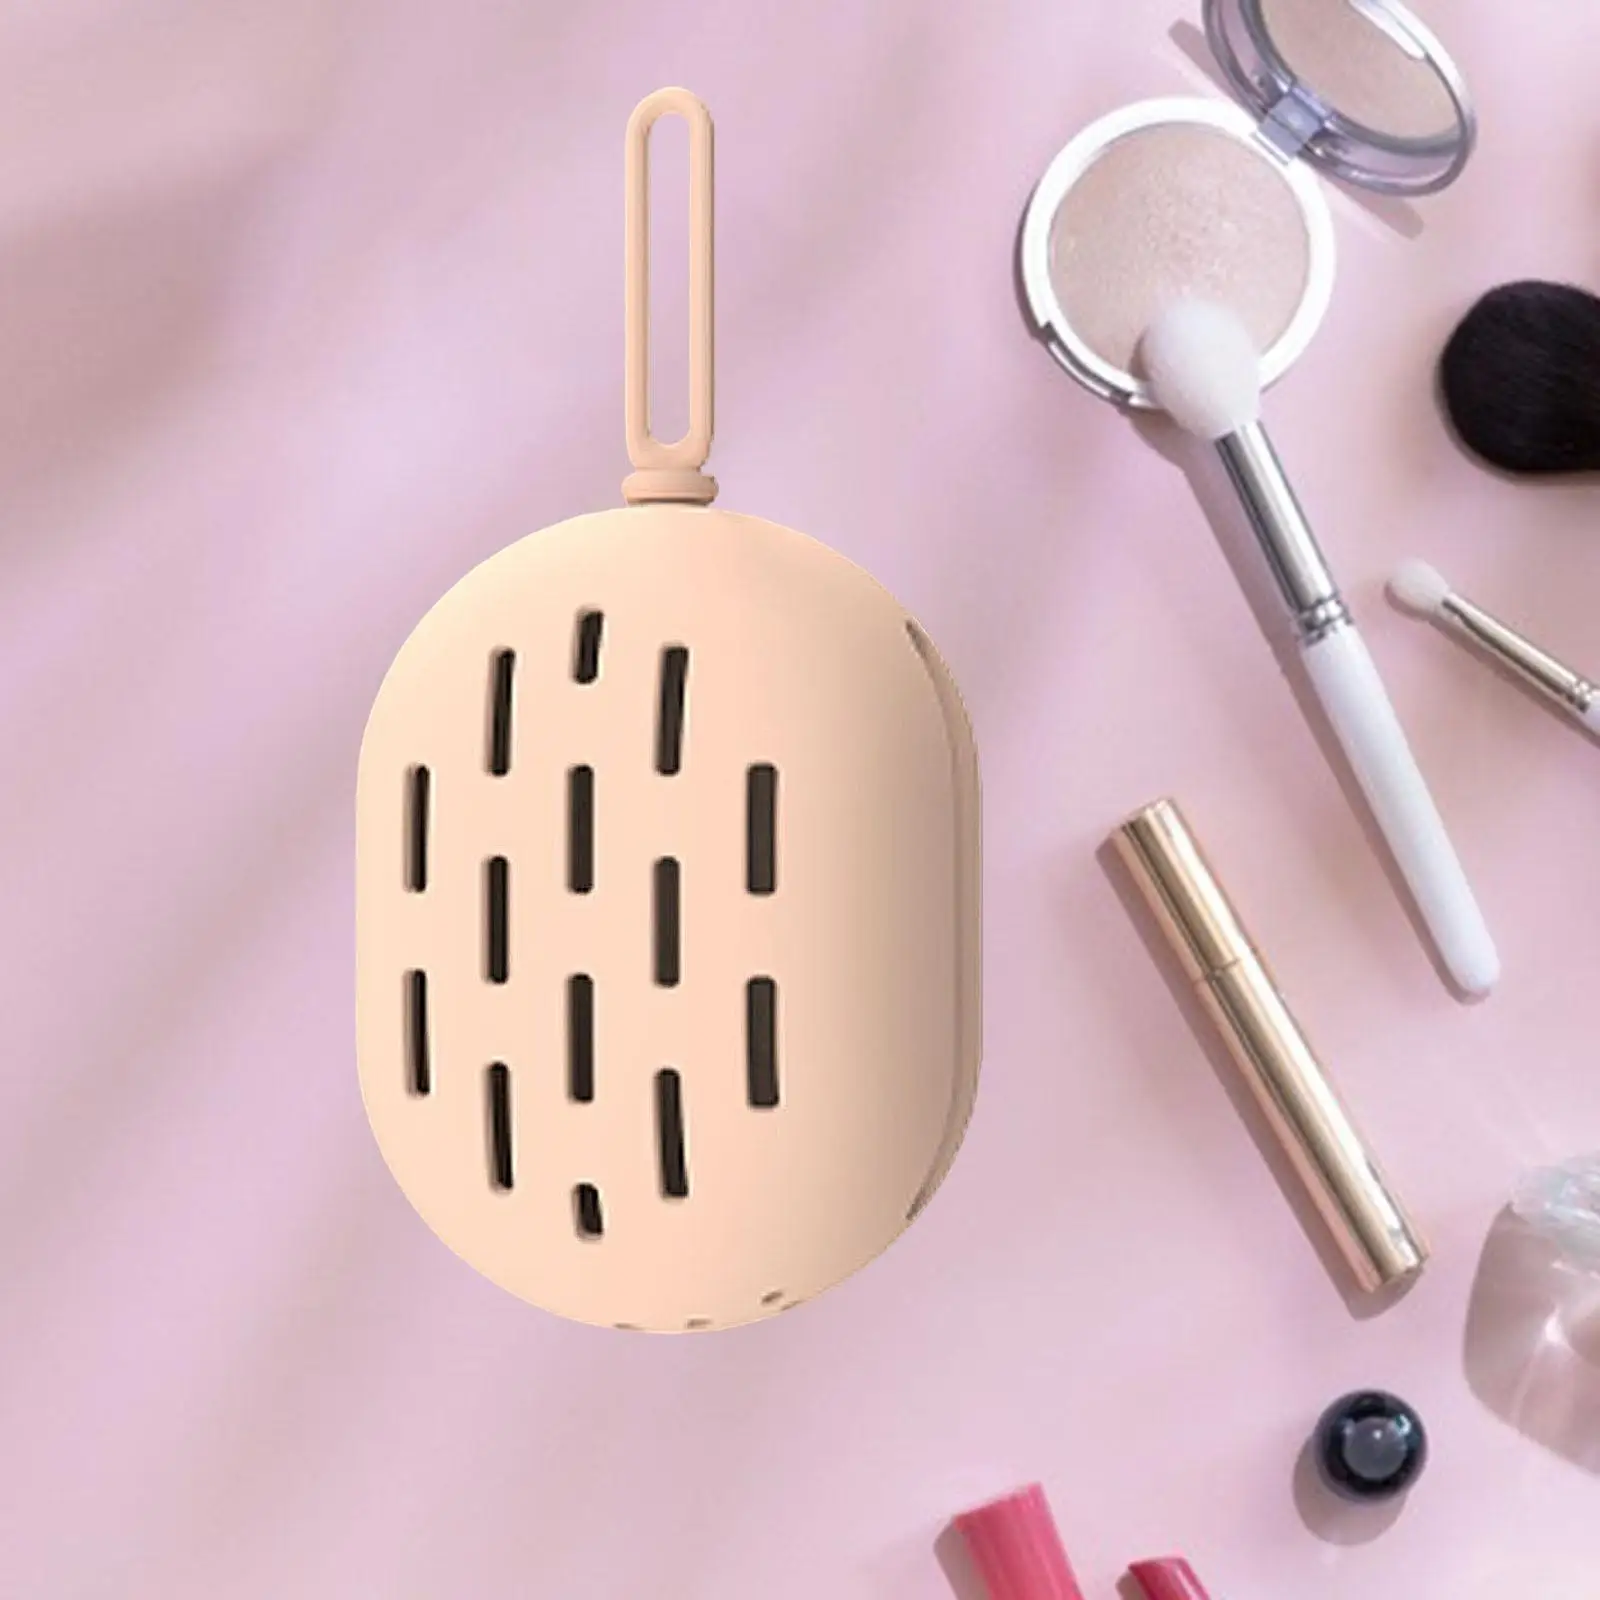 Makeup Sponge Holder Makeup Blender Travel Case Lanyard Design Beauty stand for Travel